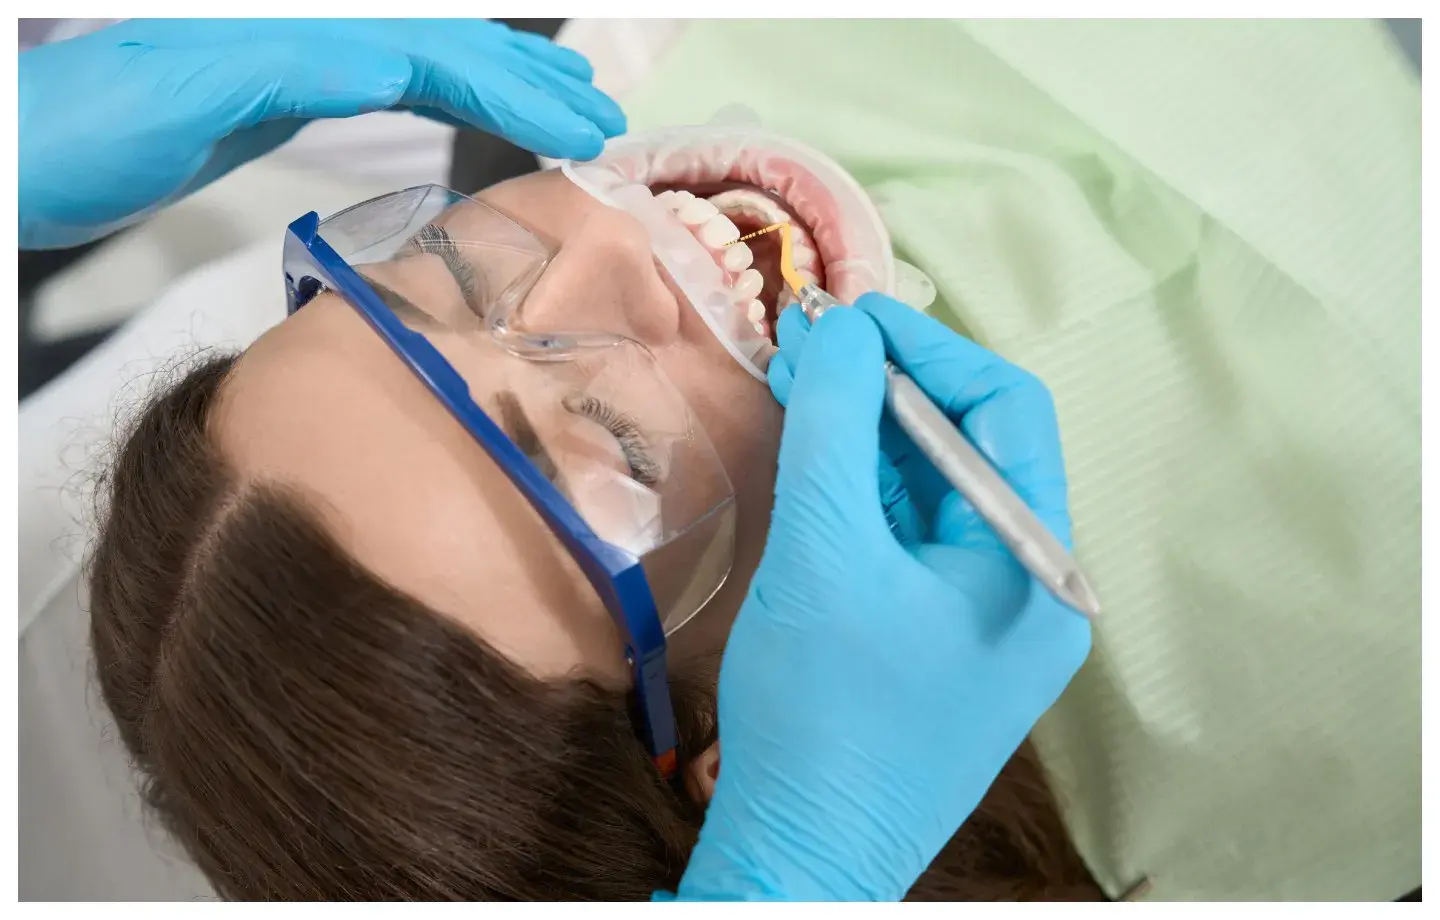 definisi scaling gigi, kapan harus dilakukan, cara dan durasi scaling gigi